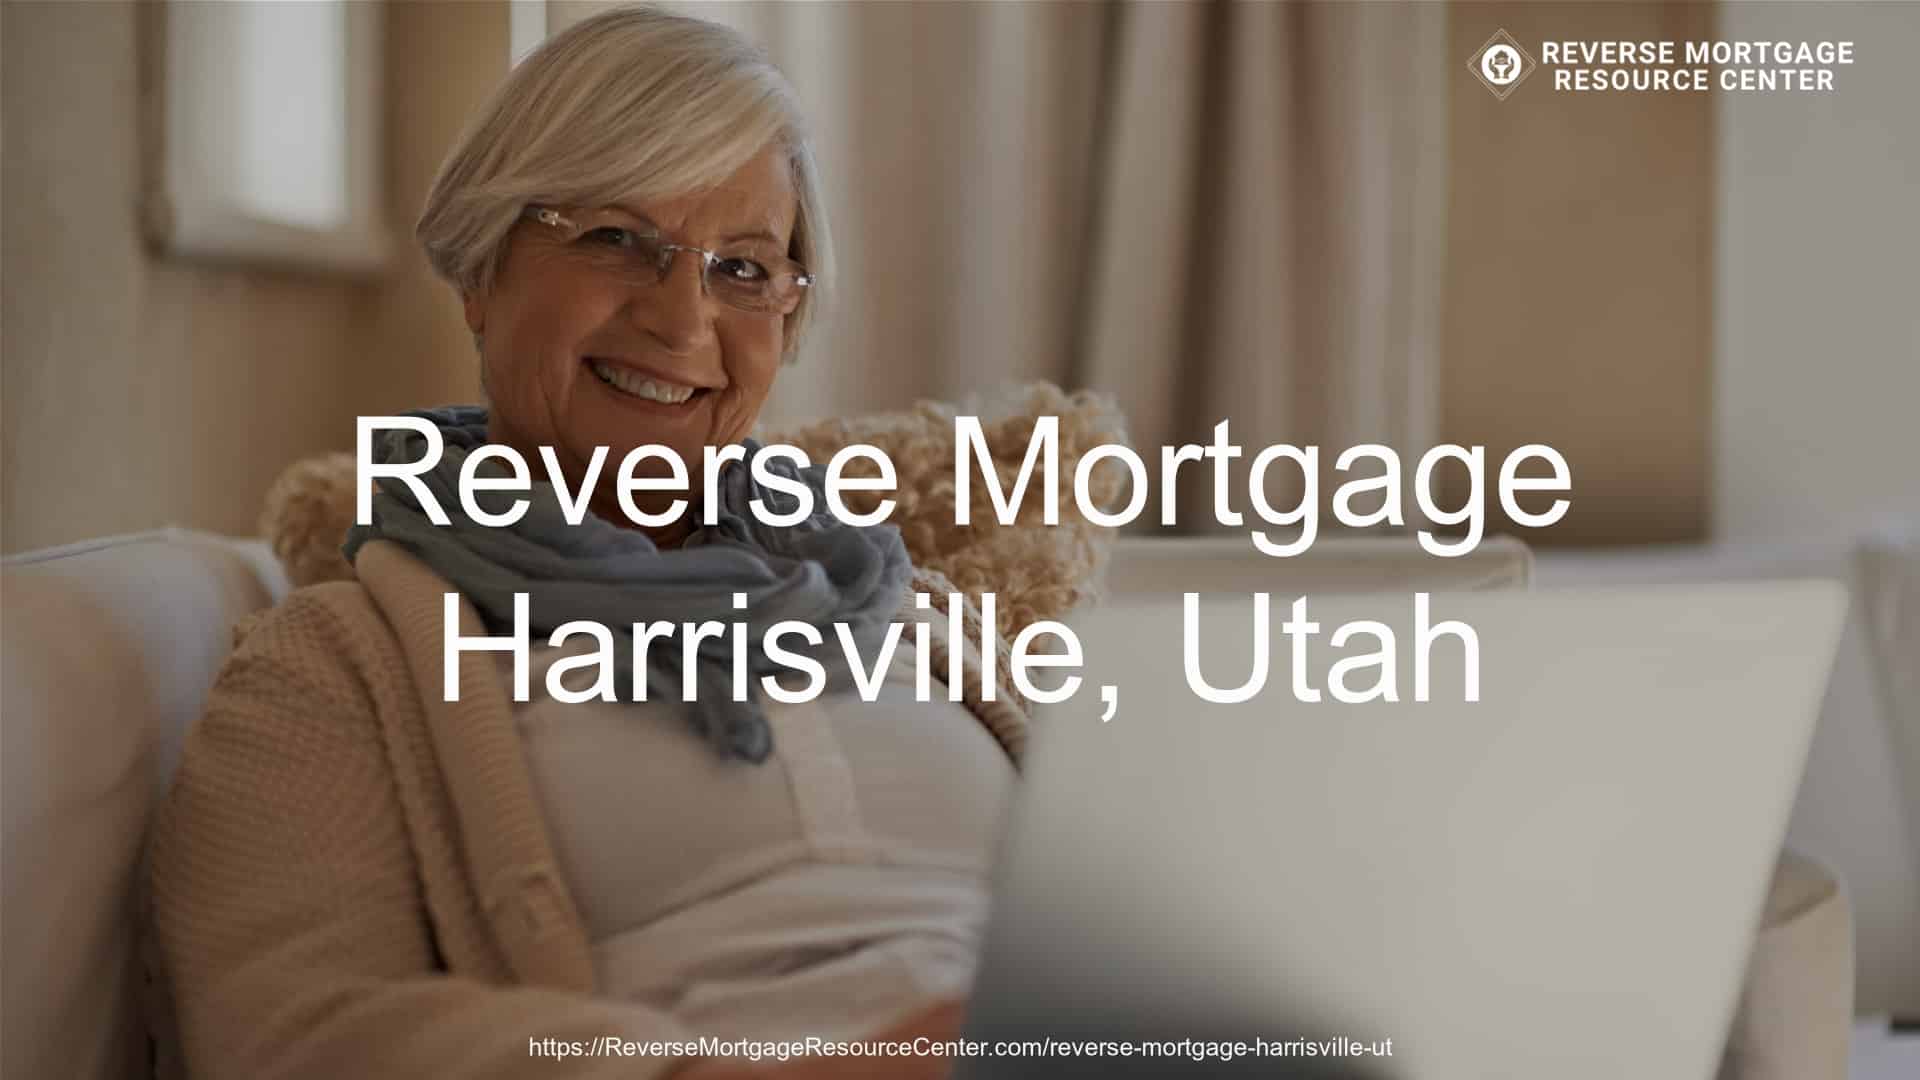 Reverse Mortgage Loans in Harrisville Utah